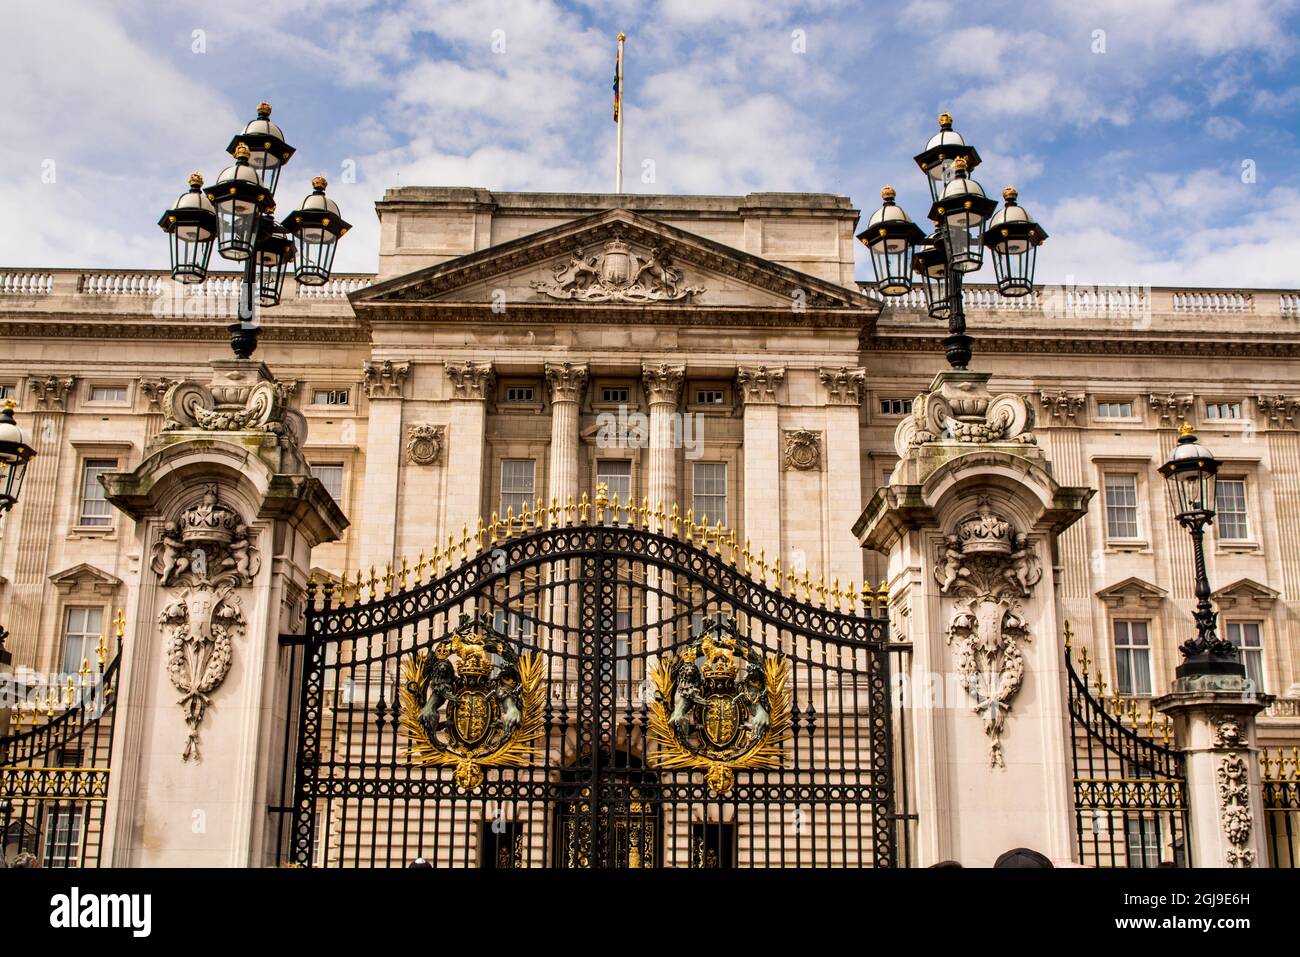 Main gates at Buckingham Palace, London, England. Stock Photo